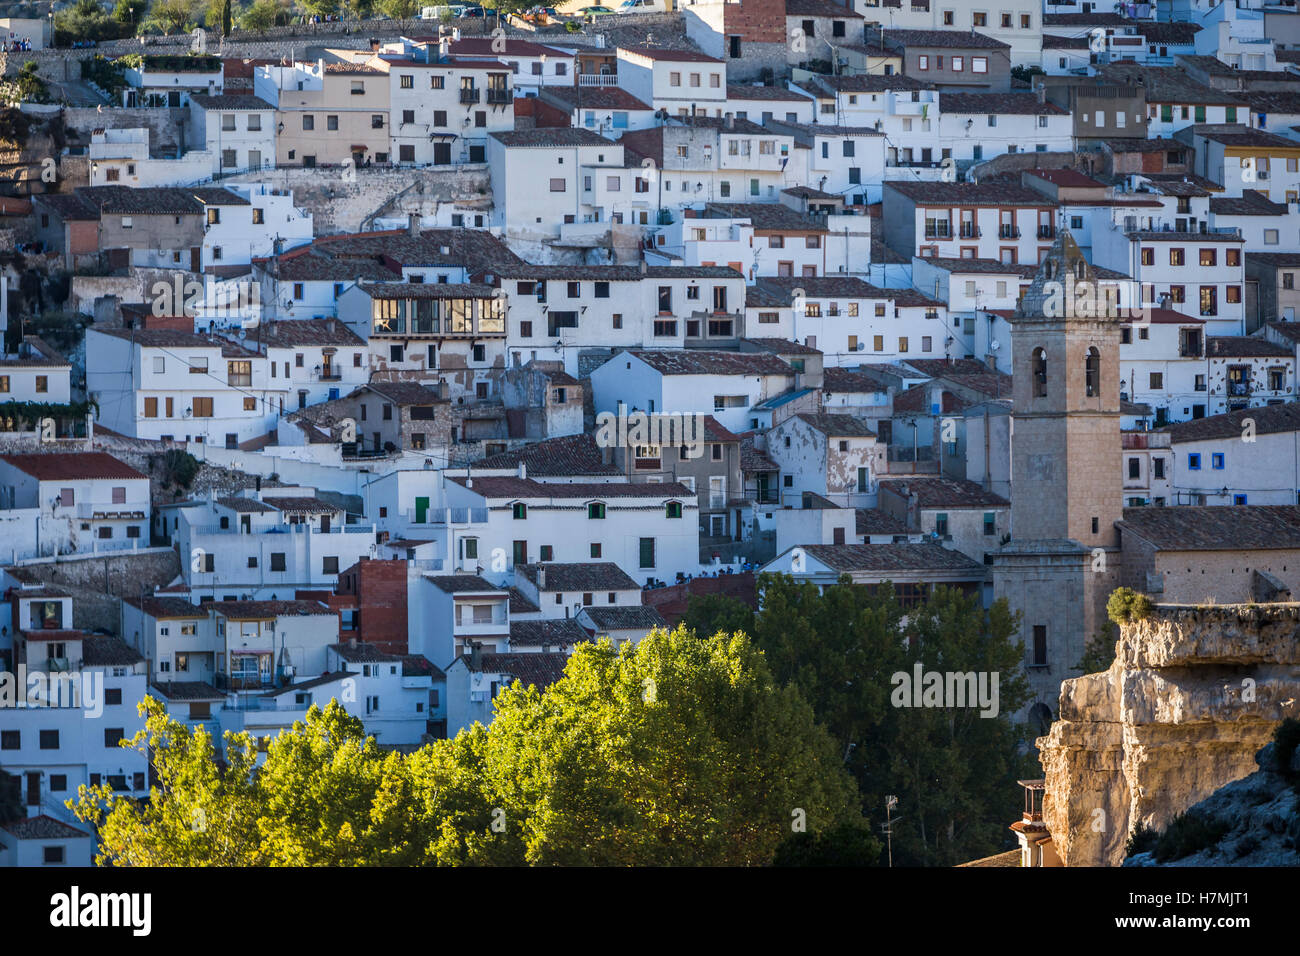 Vista panorámica de casas típicas de la ciudad durante los meses de otoño, tome en Alcalá del Júcar, provincia de Albacete, España Foto de stock